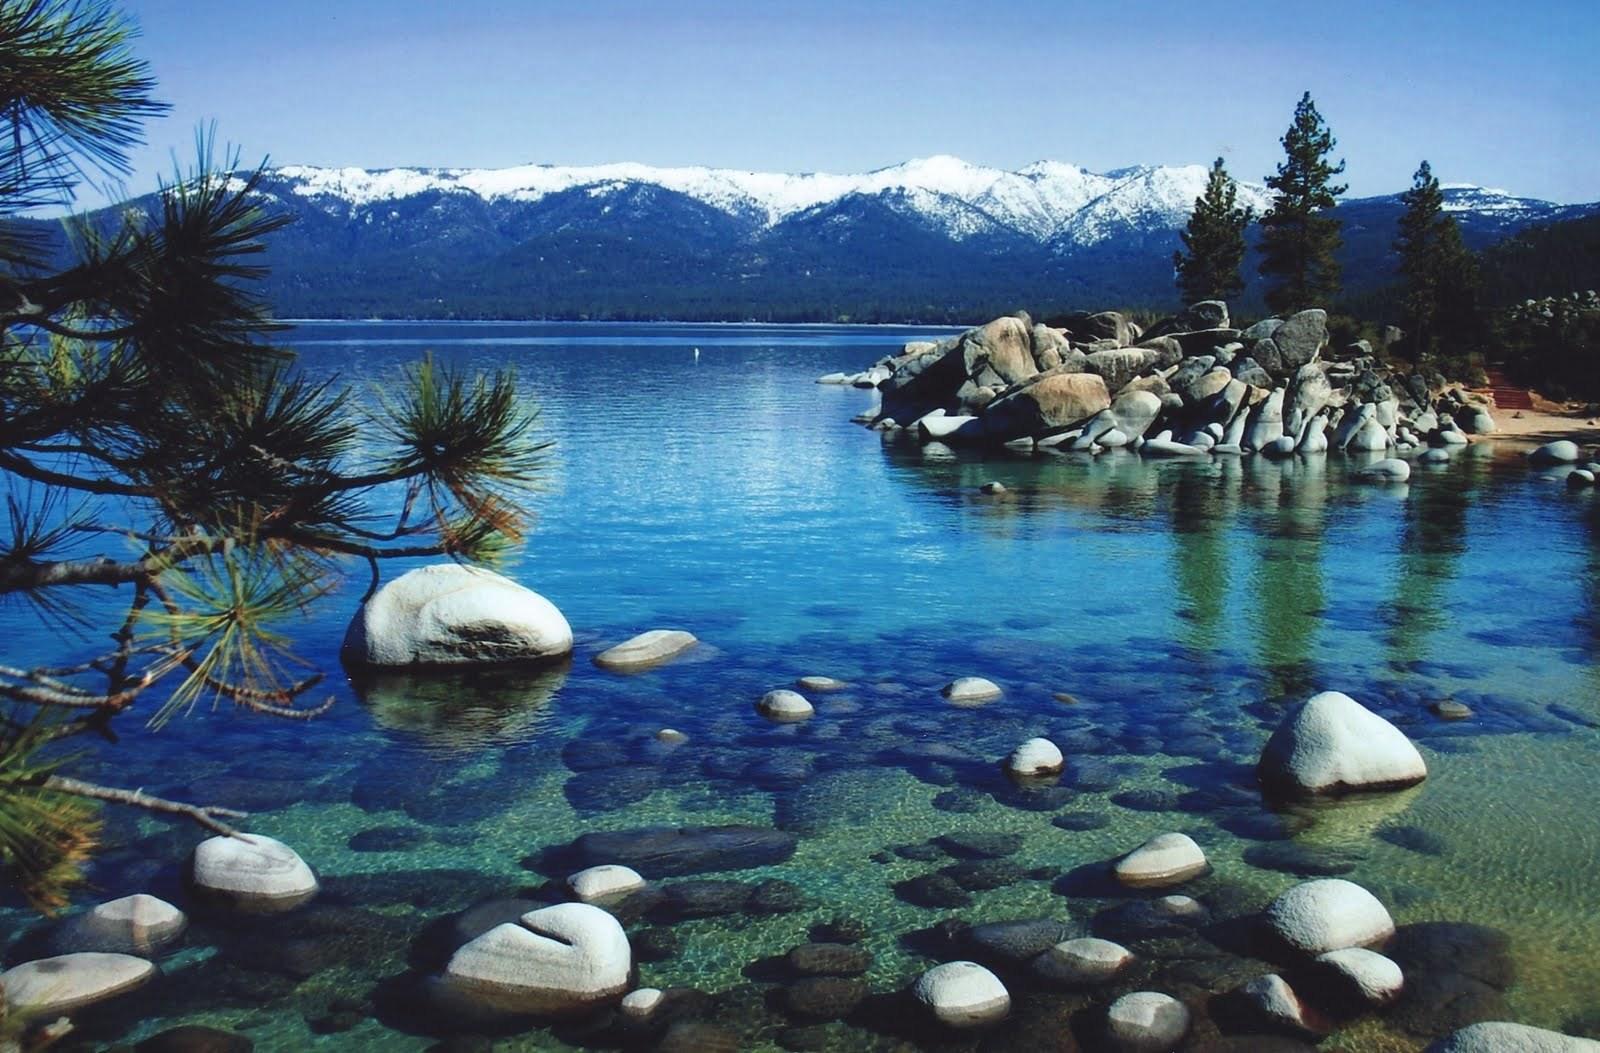 South Lake Tahoe Background. Lake Tahoe